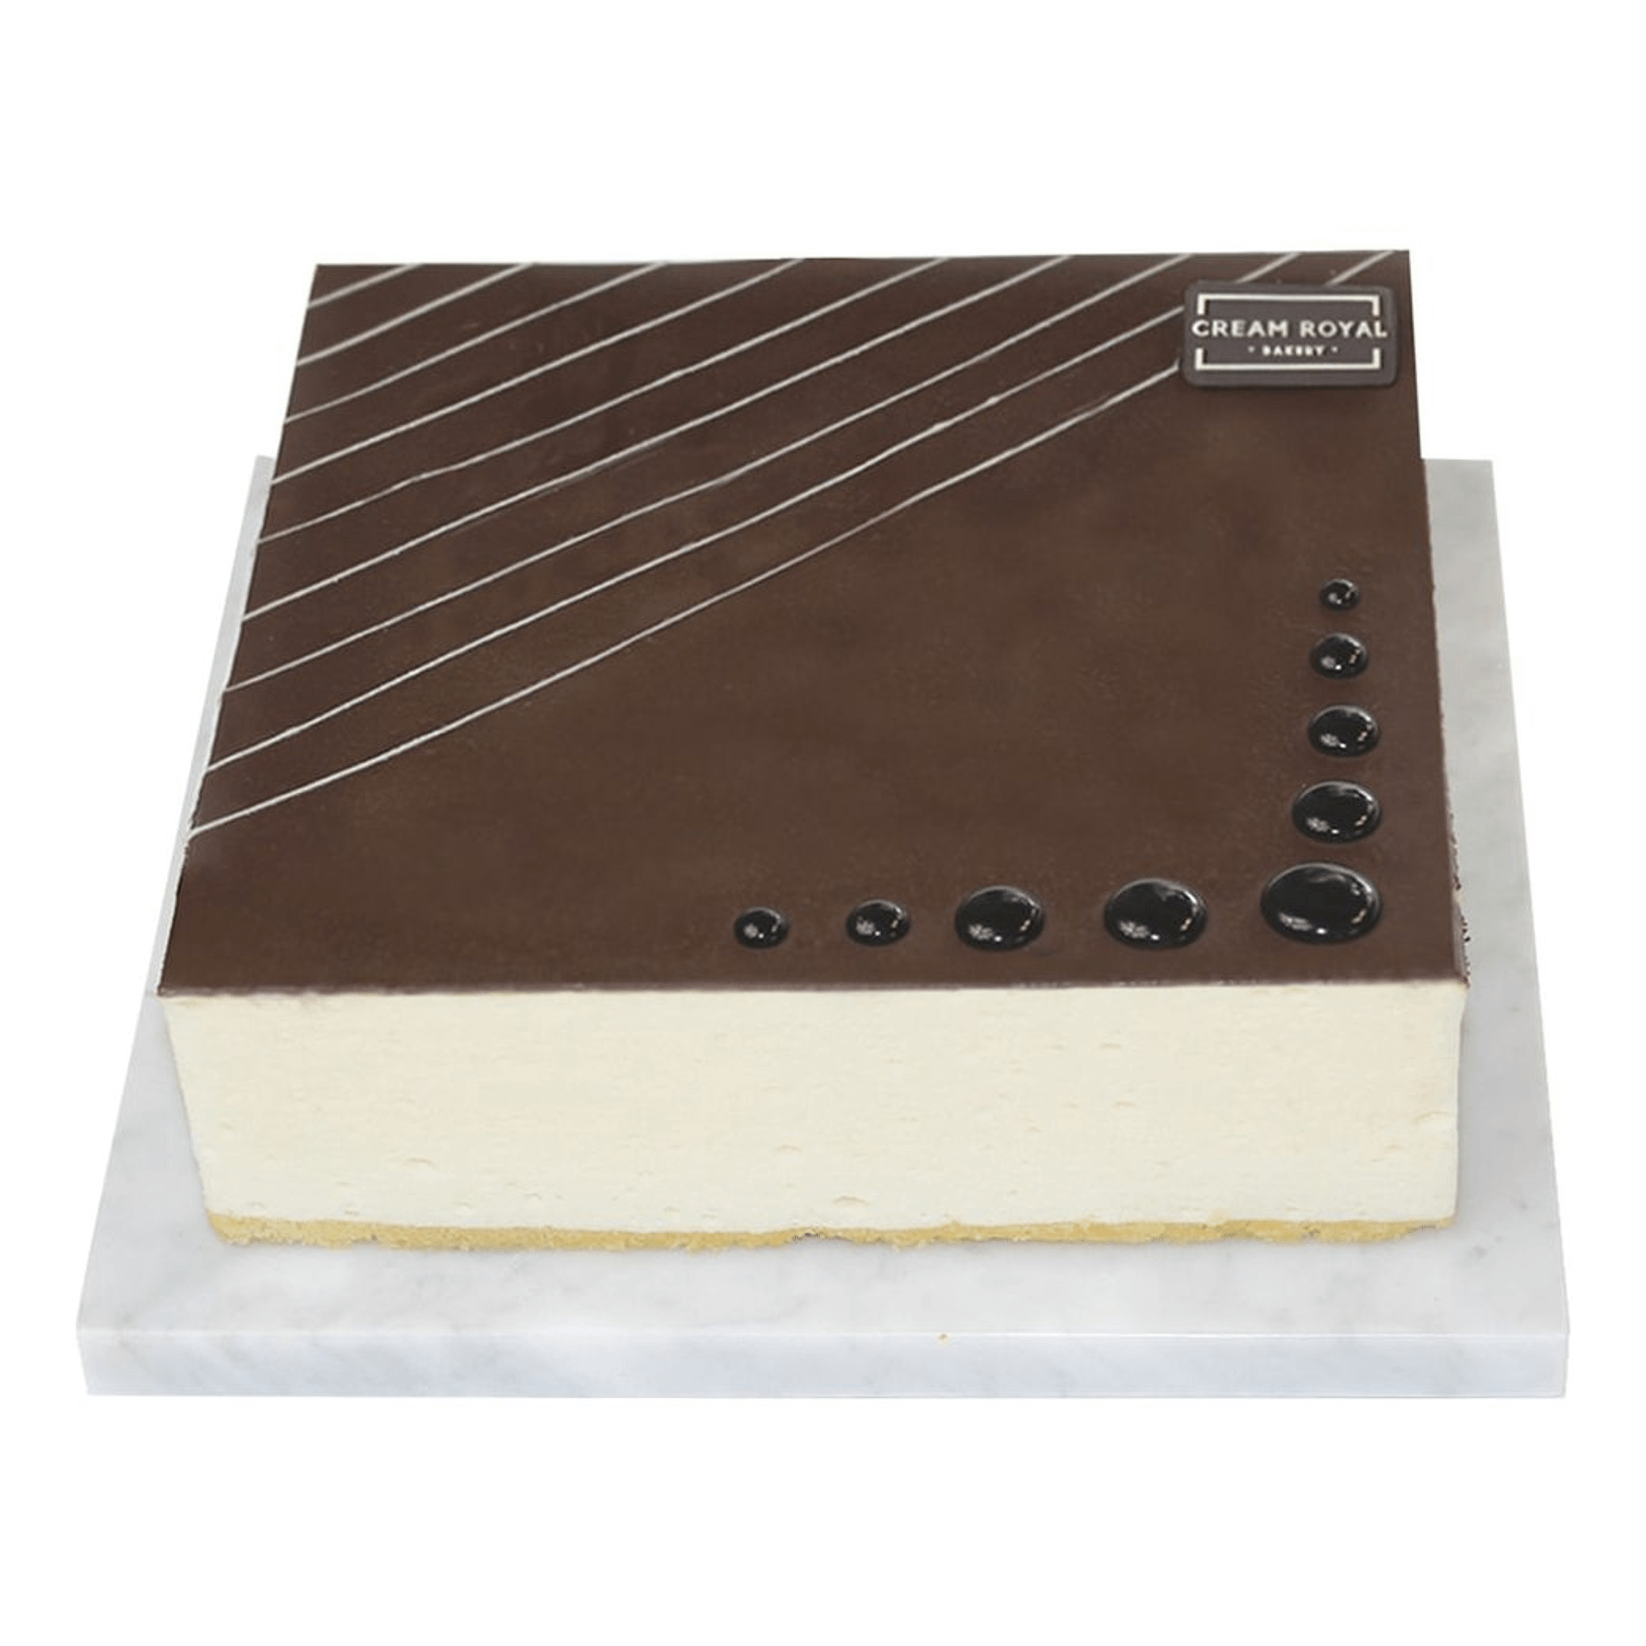 Торт Cream Royal Суфле в шоколаде замороженный 900 г